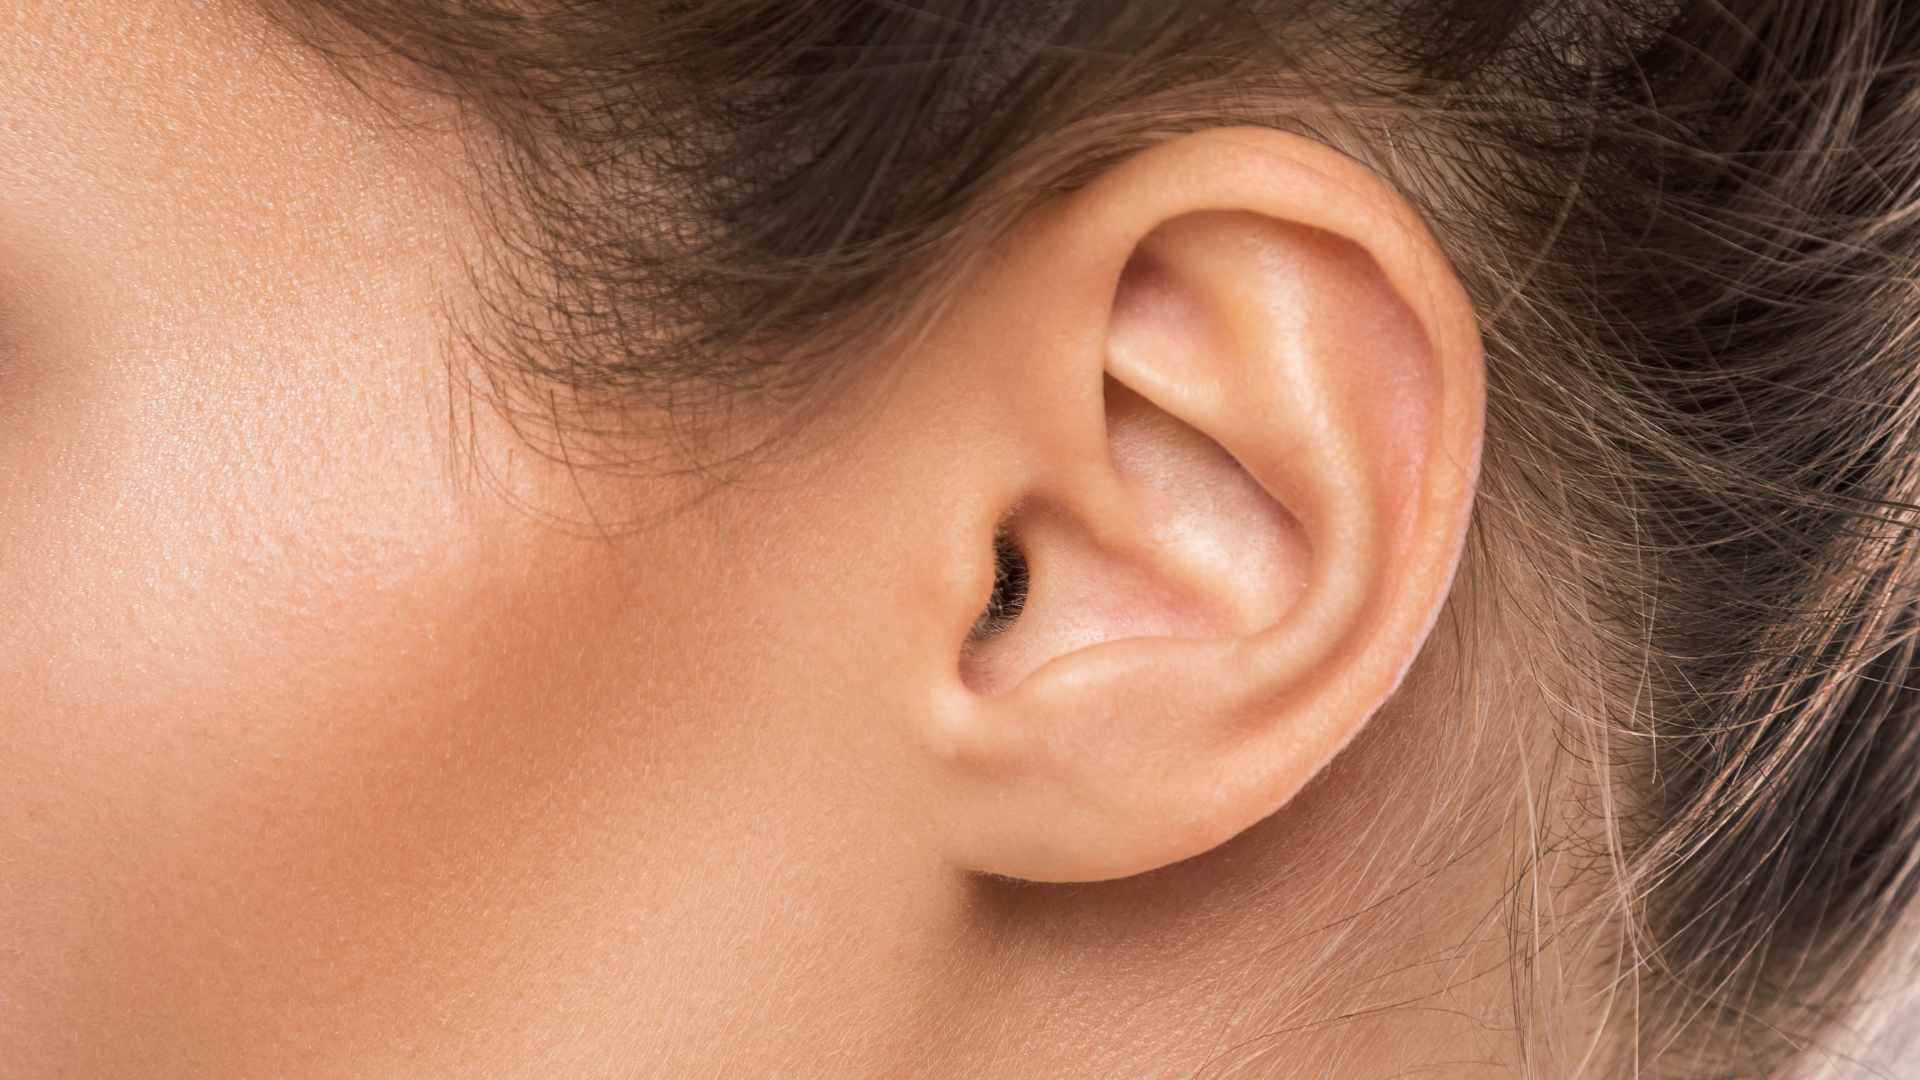 Cómo Limpiar los Oídos: Paso a Paso